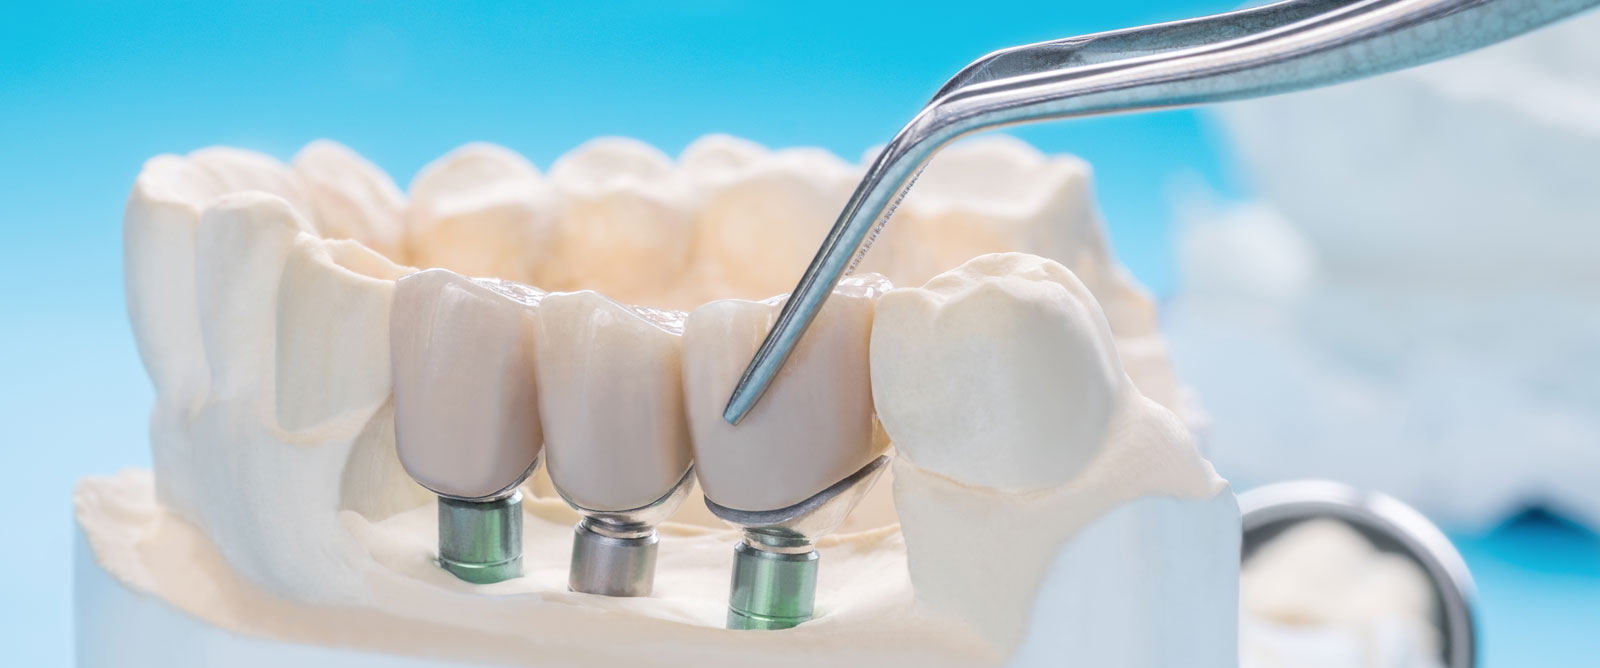 ¿Cómo se realiza un implante dental?